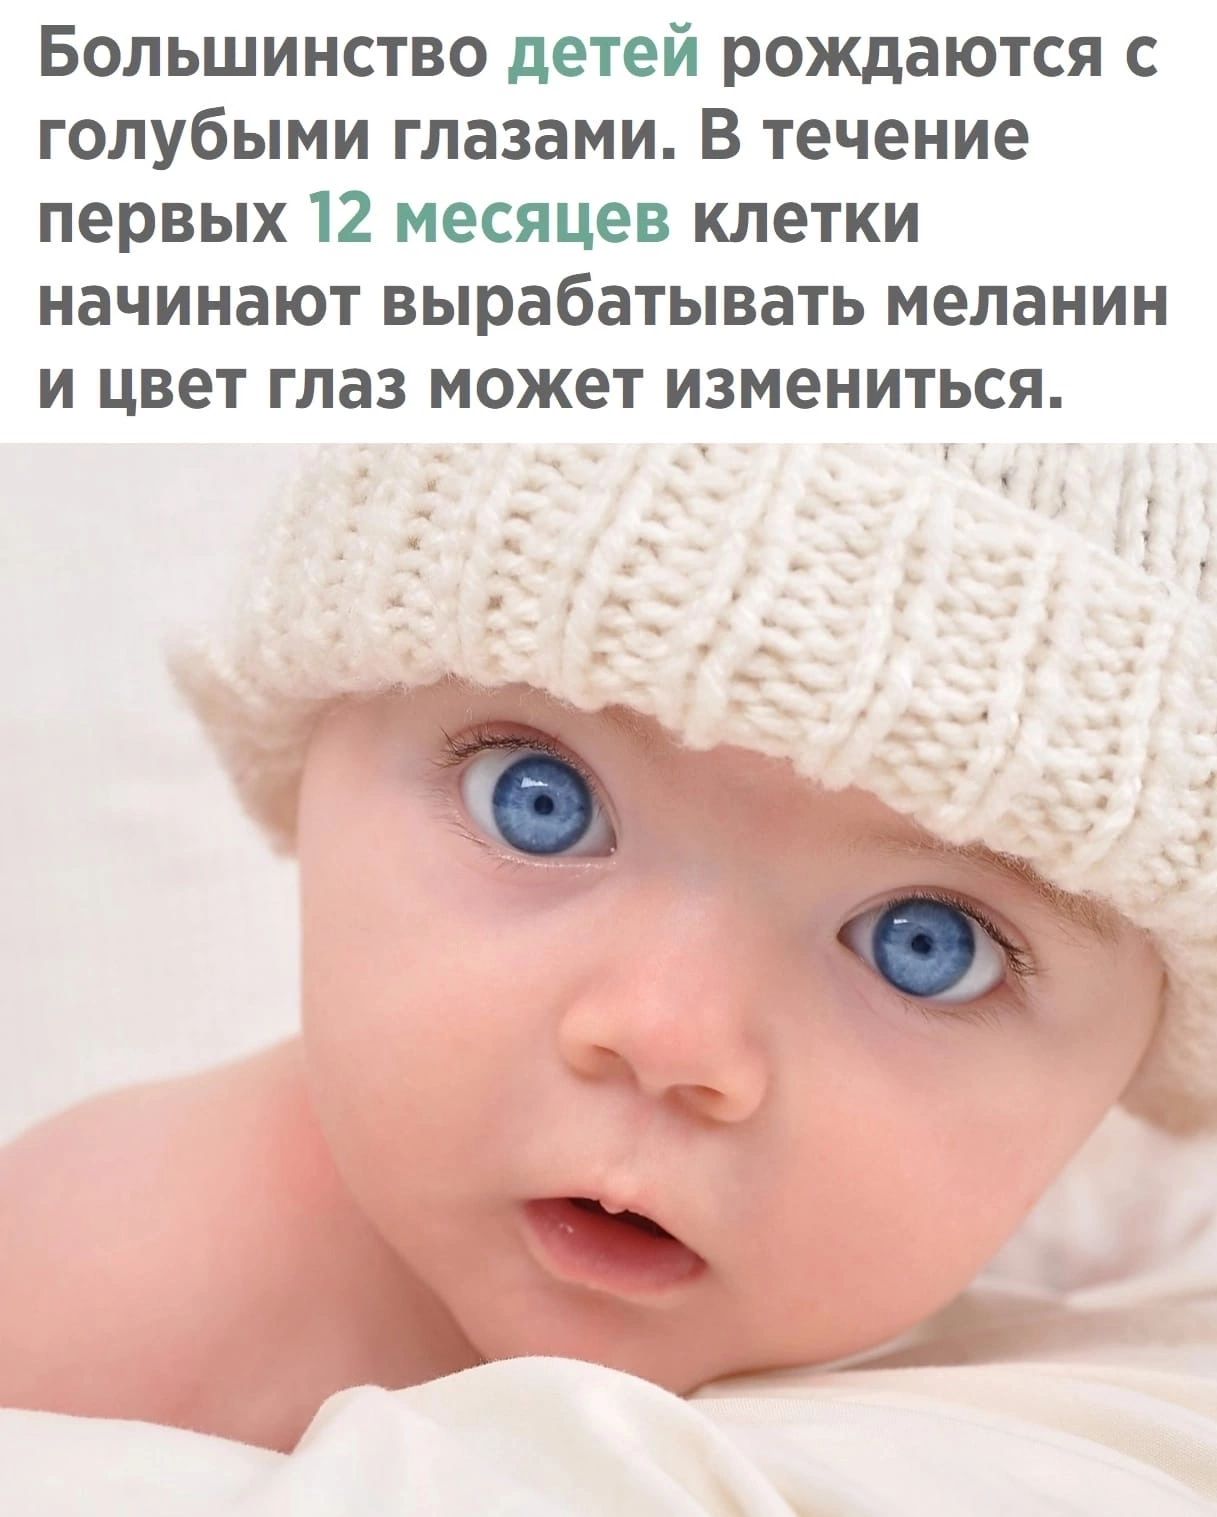 Большинство детей рождаются с голубыми глазами В течение первых 12 месяцев клетки начинают вырабатывать меланин и цвет глаз может измениться